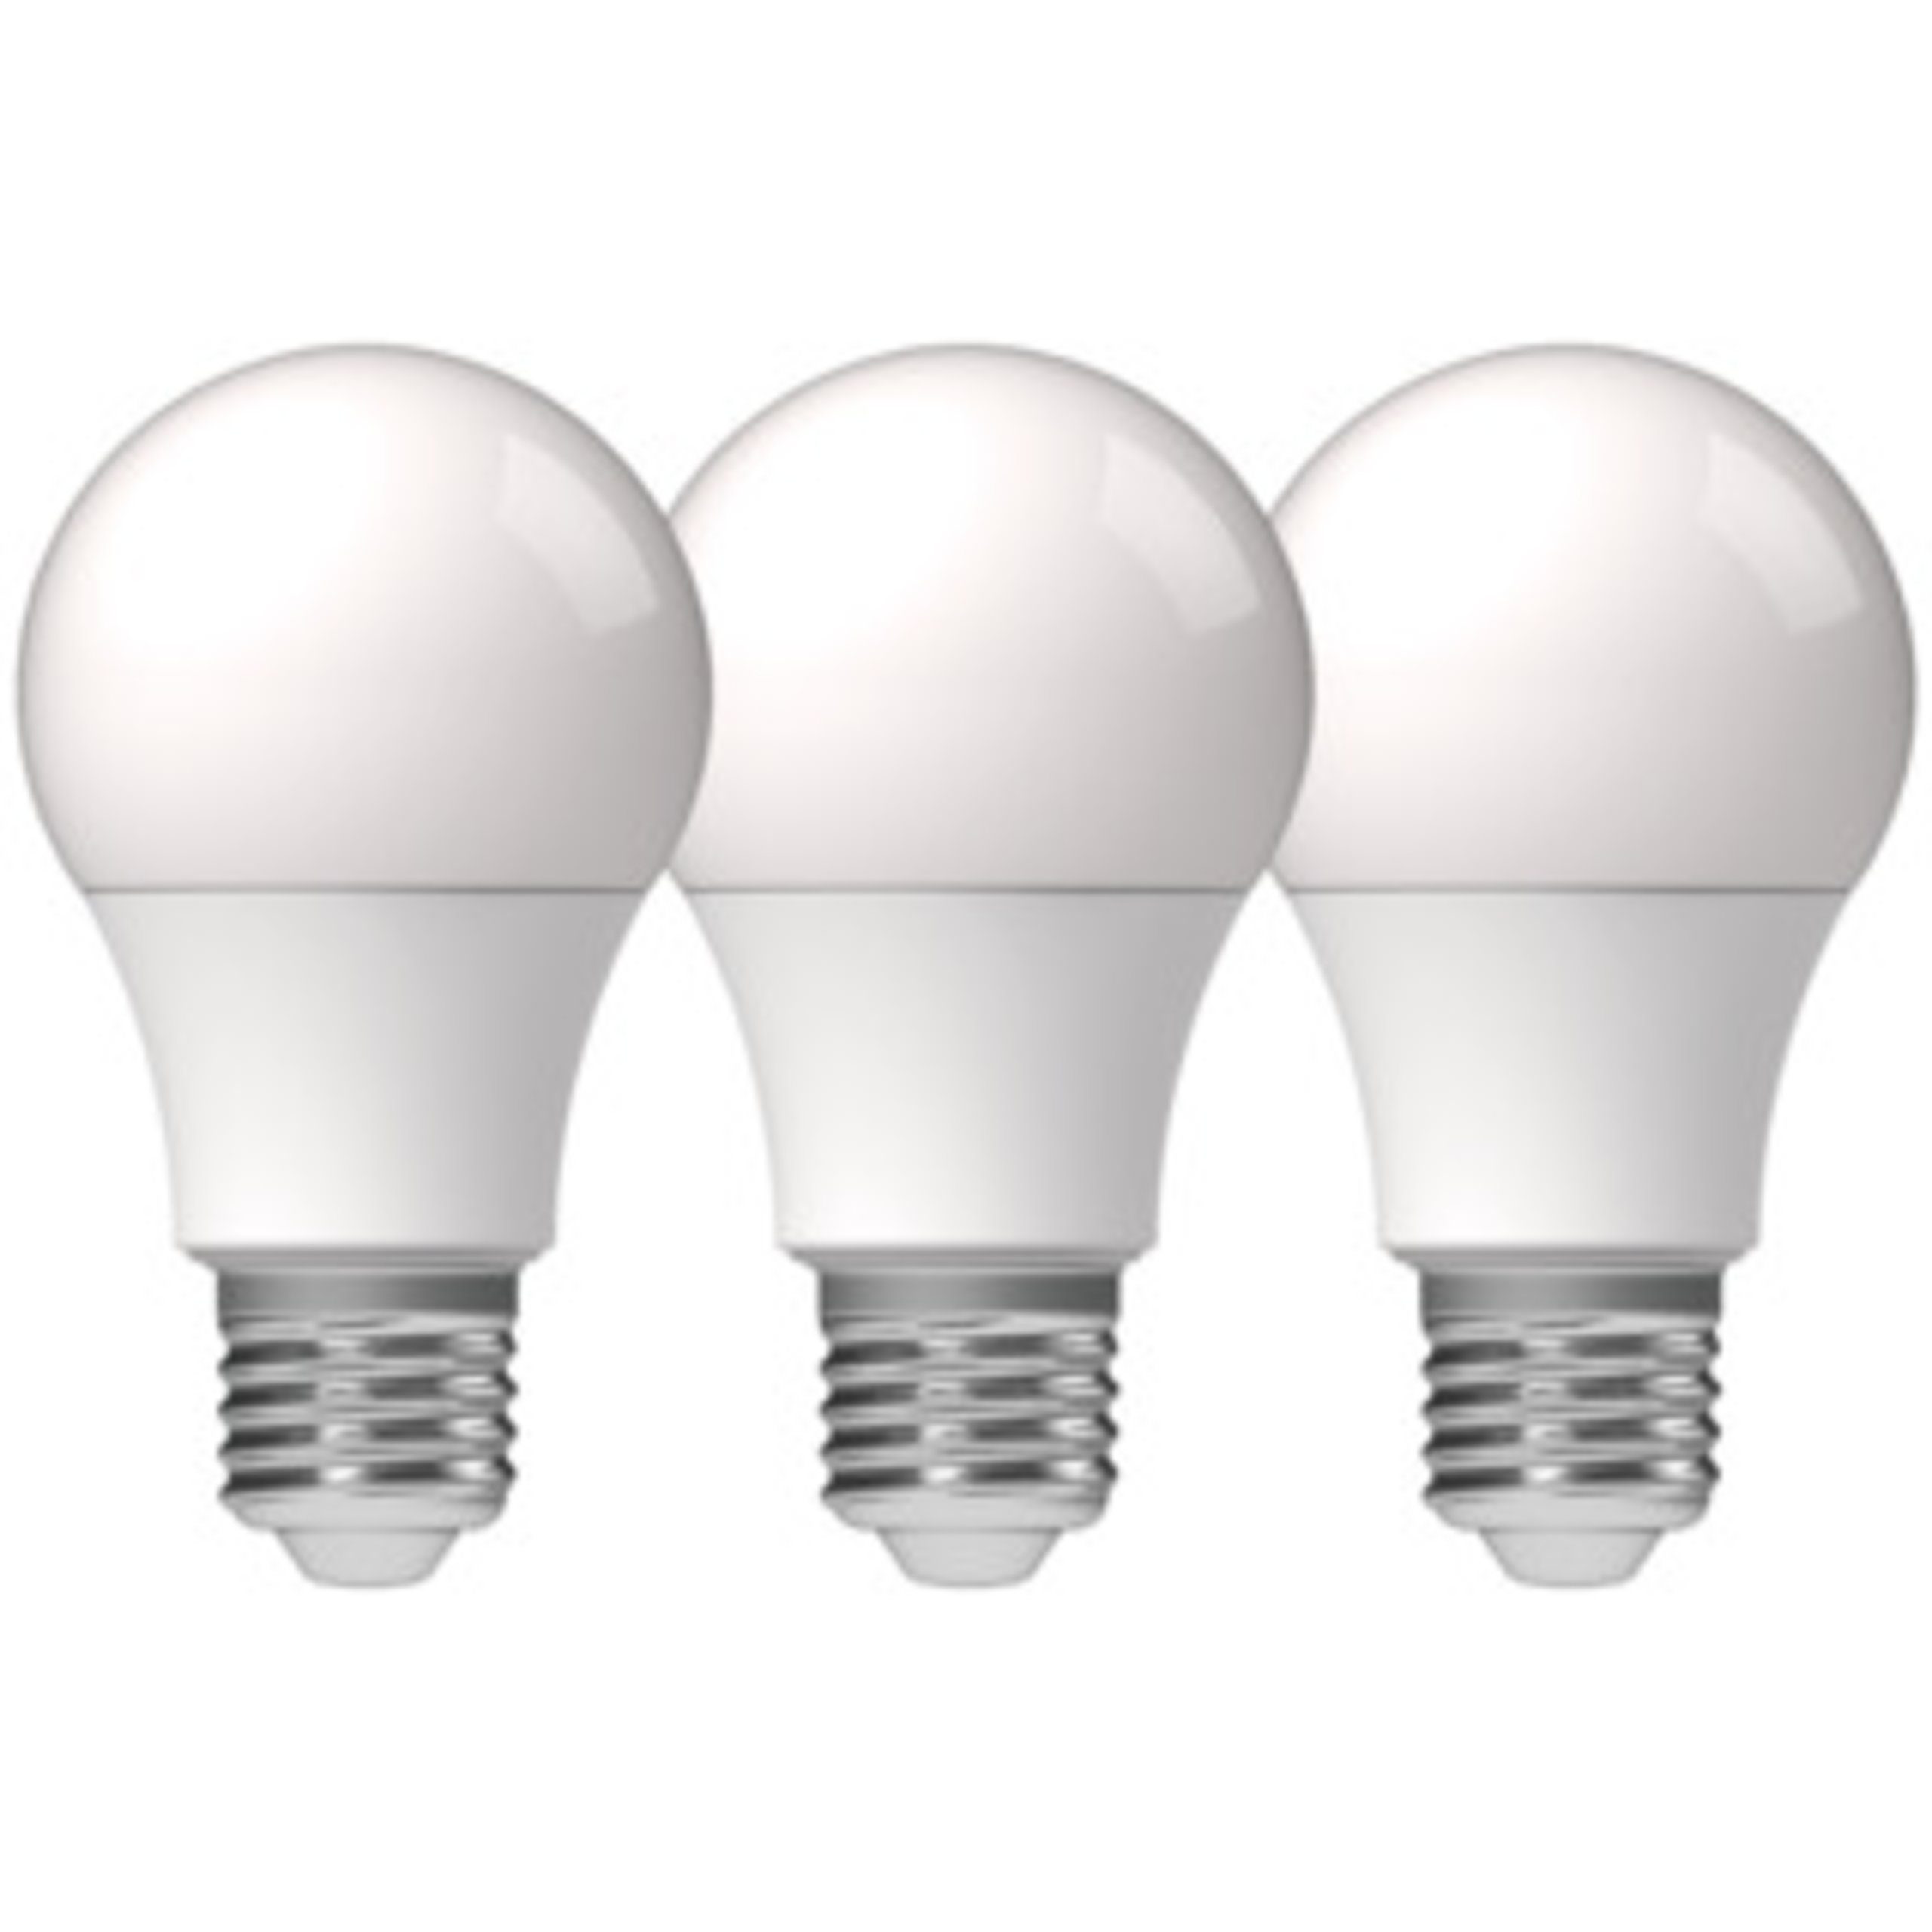 LED's light LED-Leuchtmittel 0620170 LED Glühbirne, E27, E27 8W warmweiß Opal A60 3-Pack